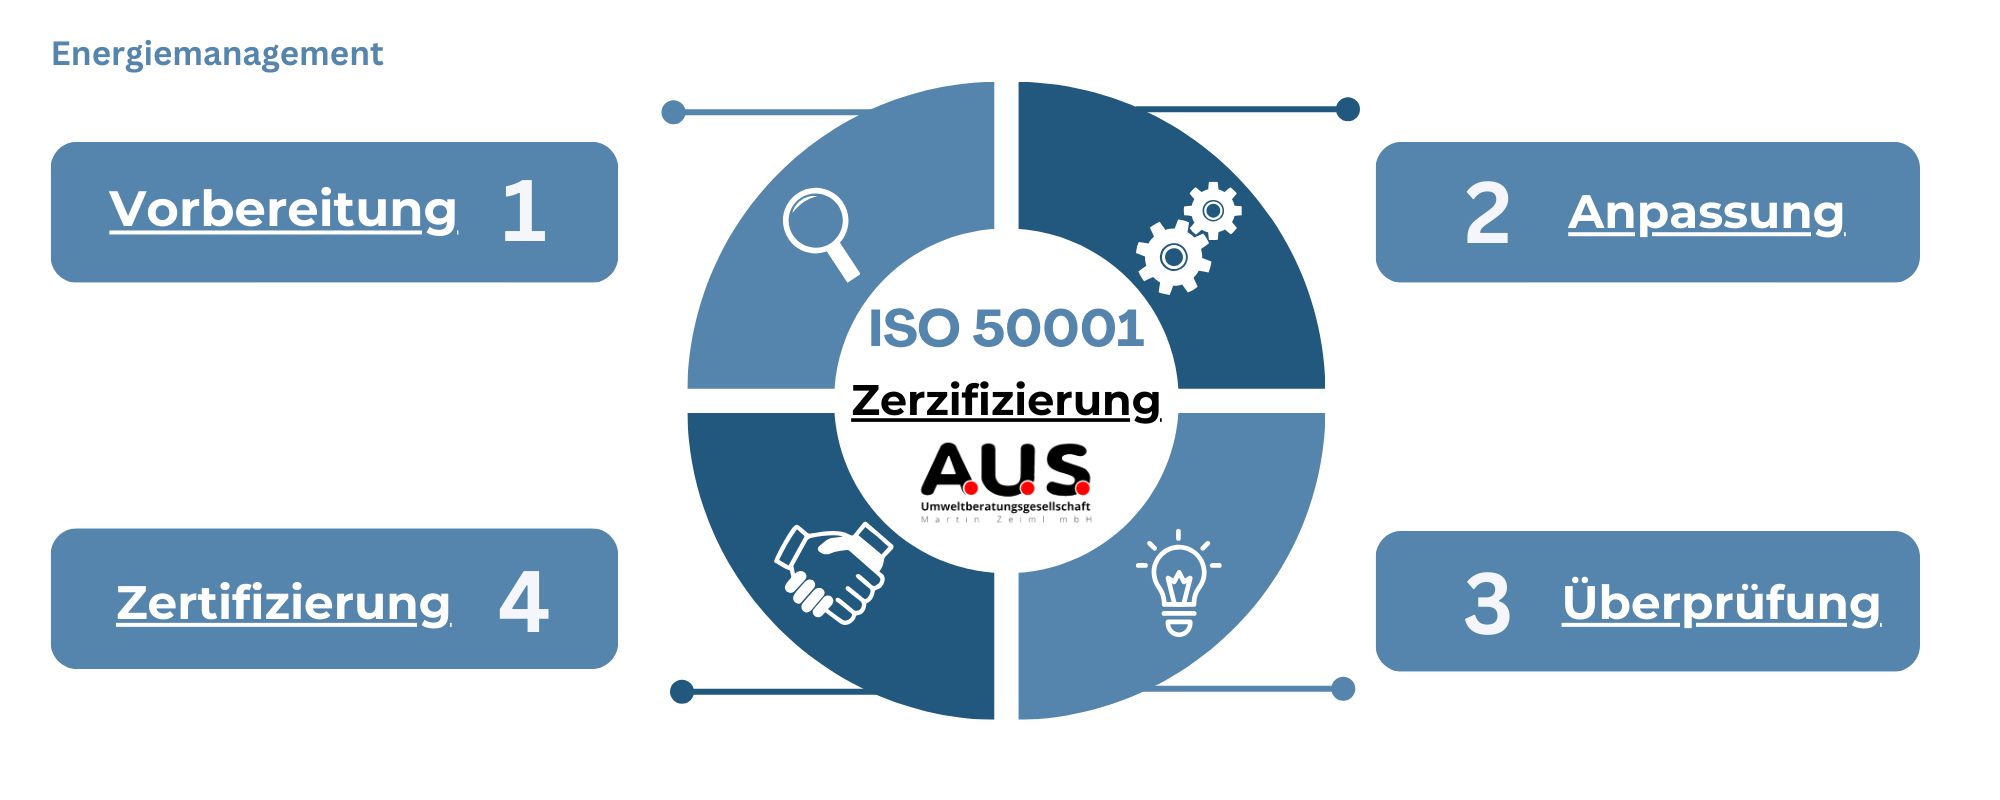 A.U.S. ISO 50001 Zerifizierung